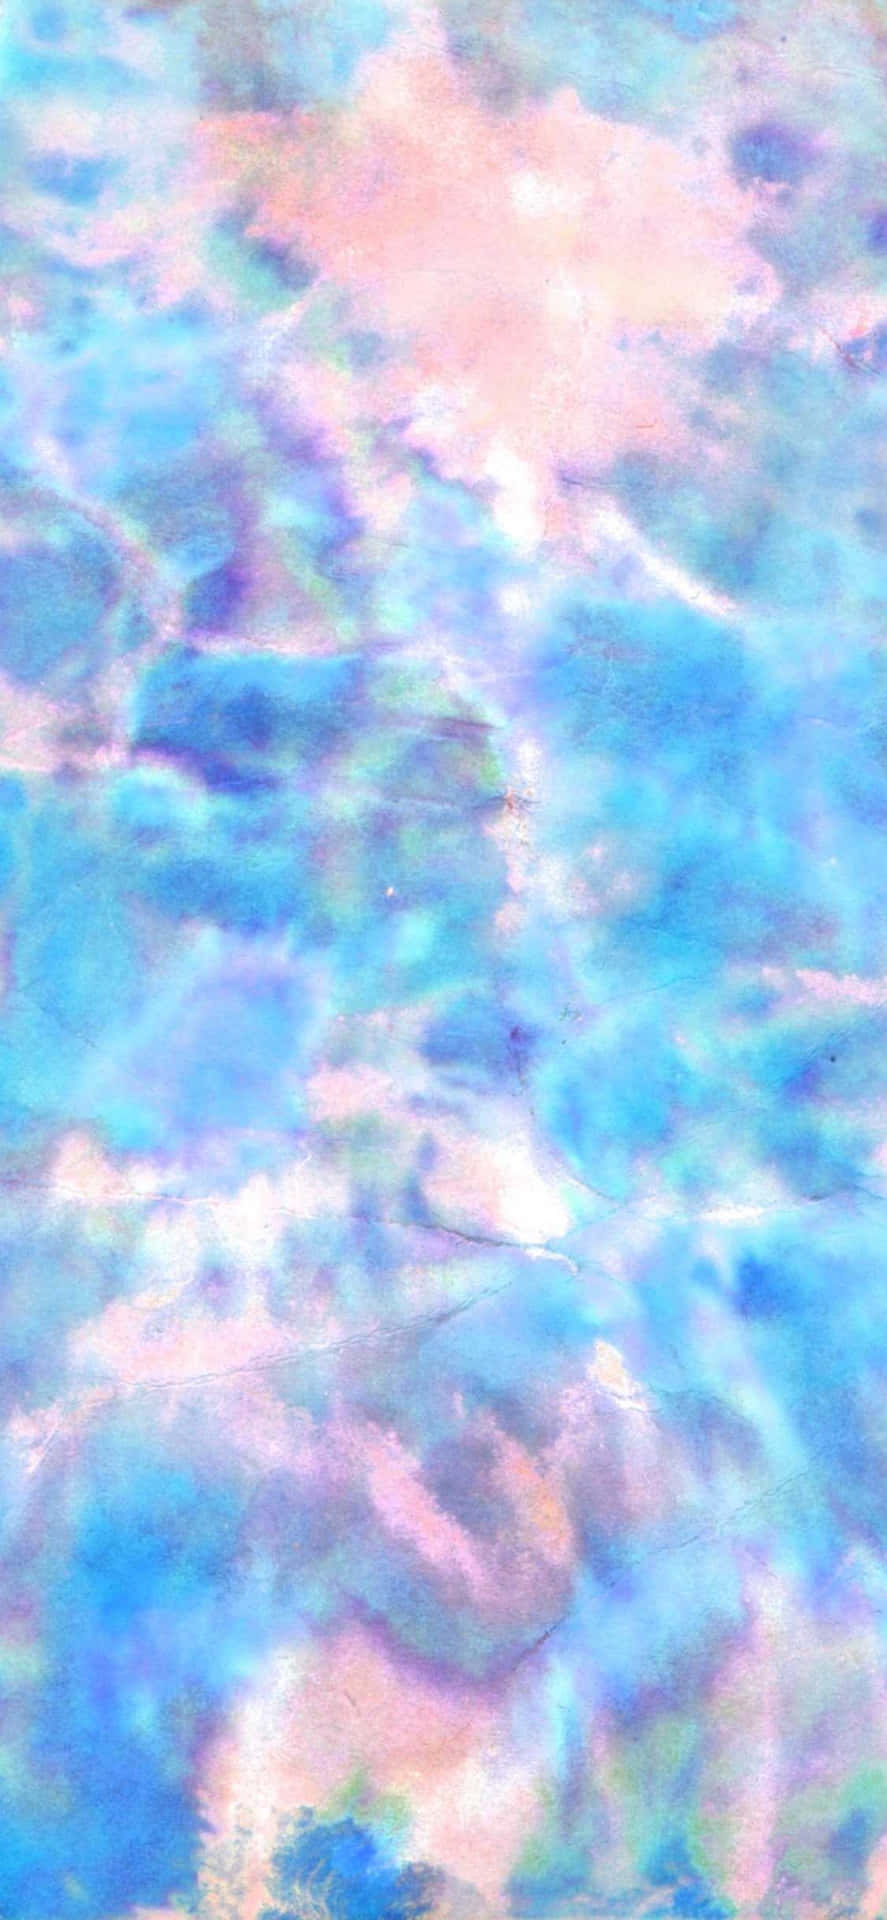 Pretty Tie Dye Turquoise Water Aesthetic Wallpaper